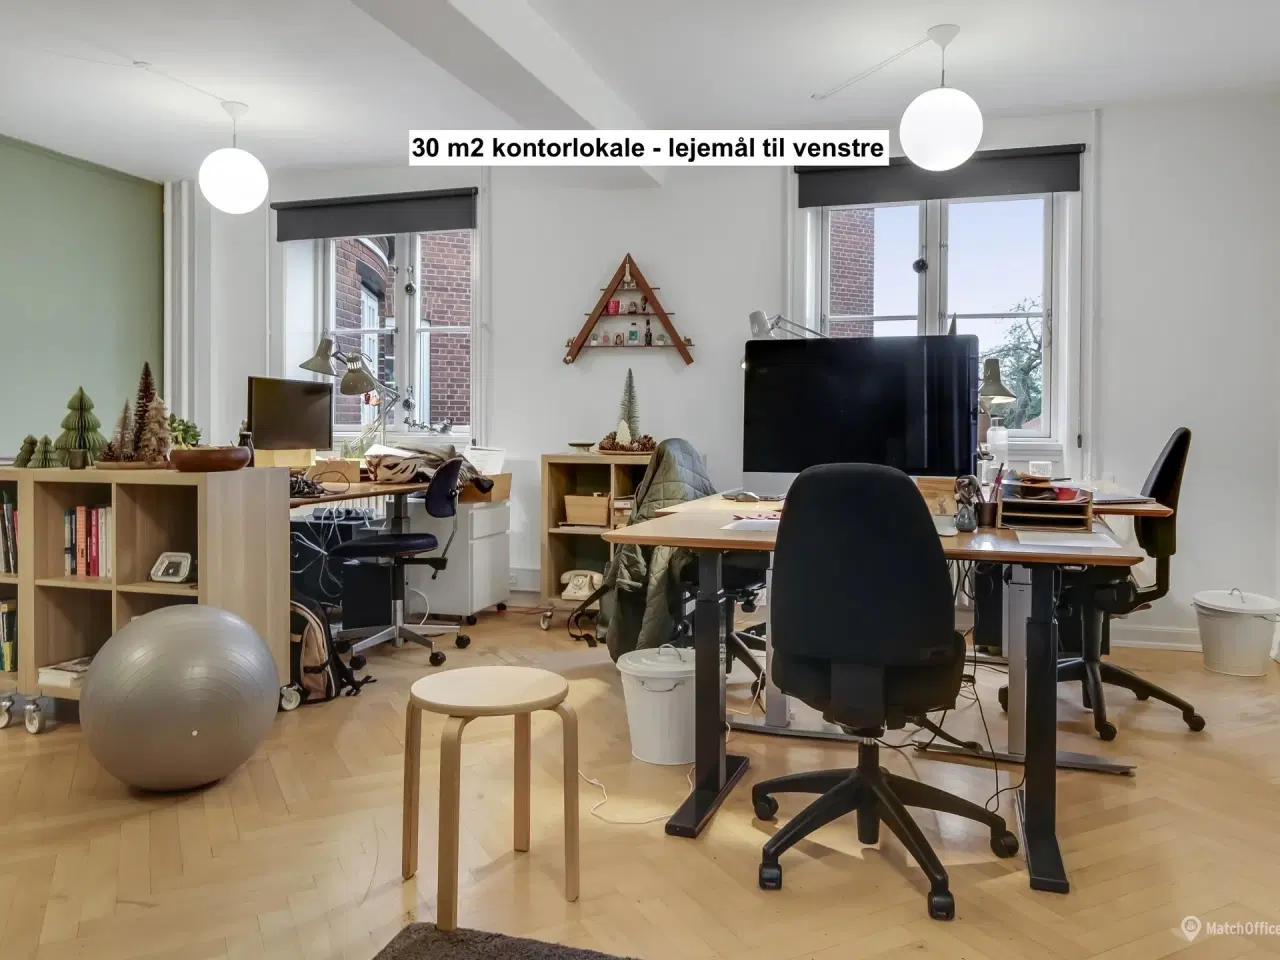 Billede 3 - Vælg den perfekte side - "Til højre eller til venstre" - Unikt kontorlejemål med historisk charme og moderne faciliteter